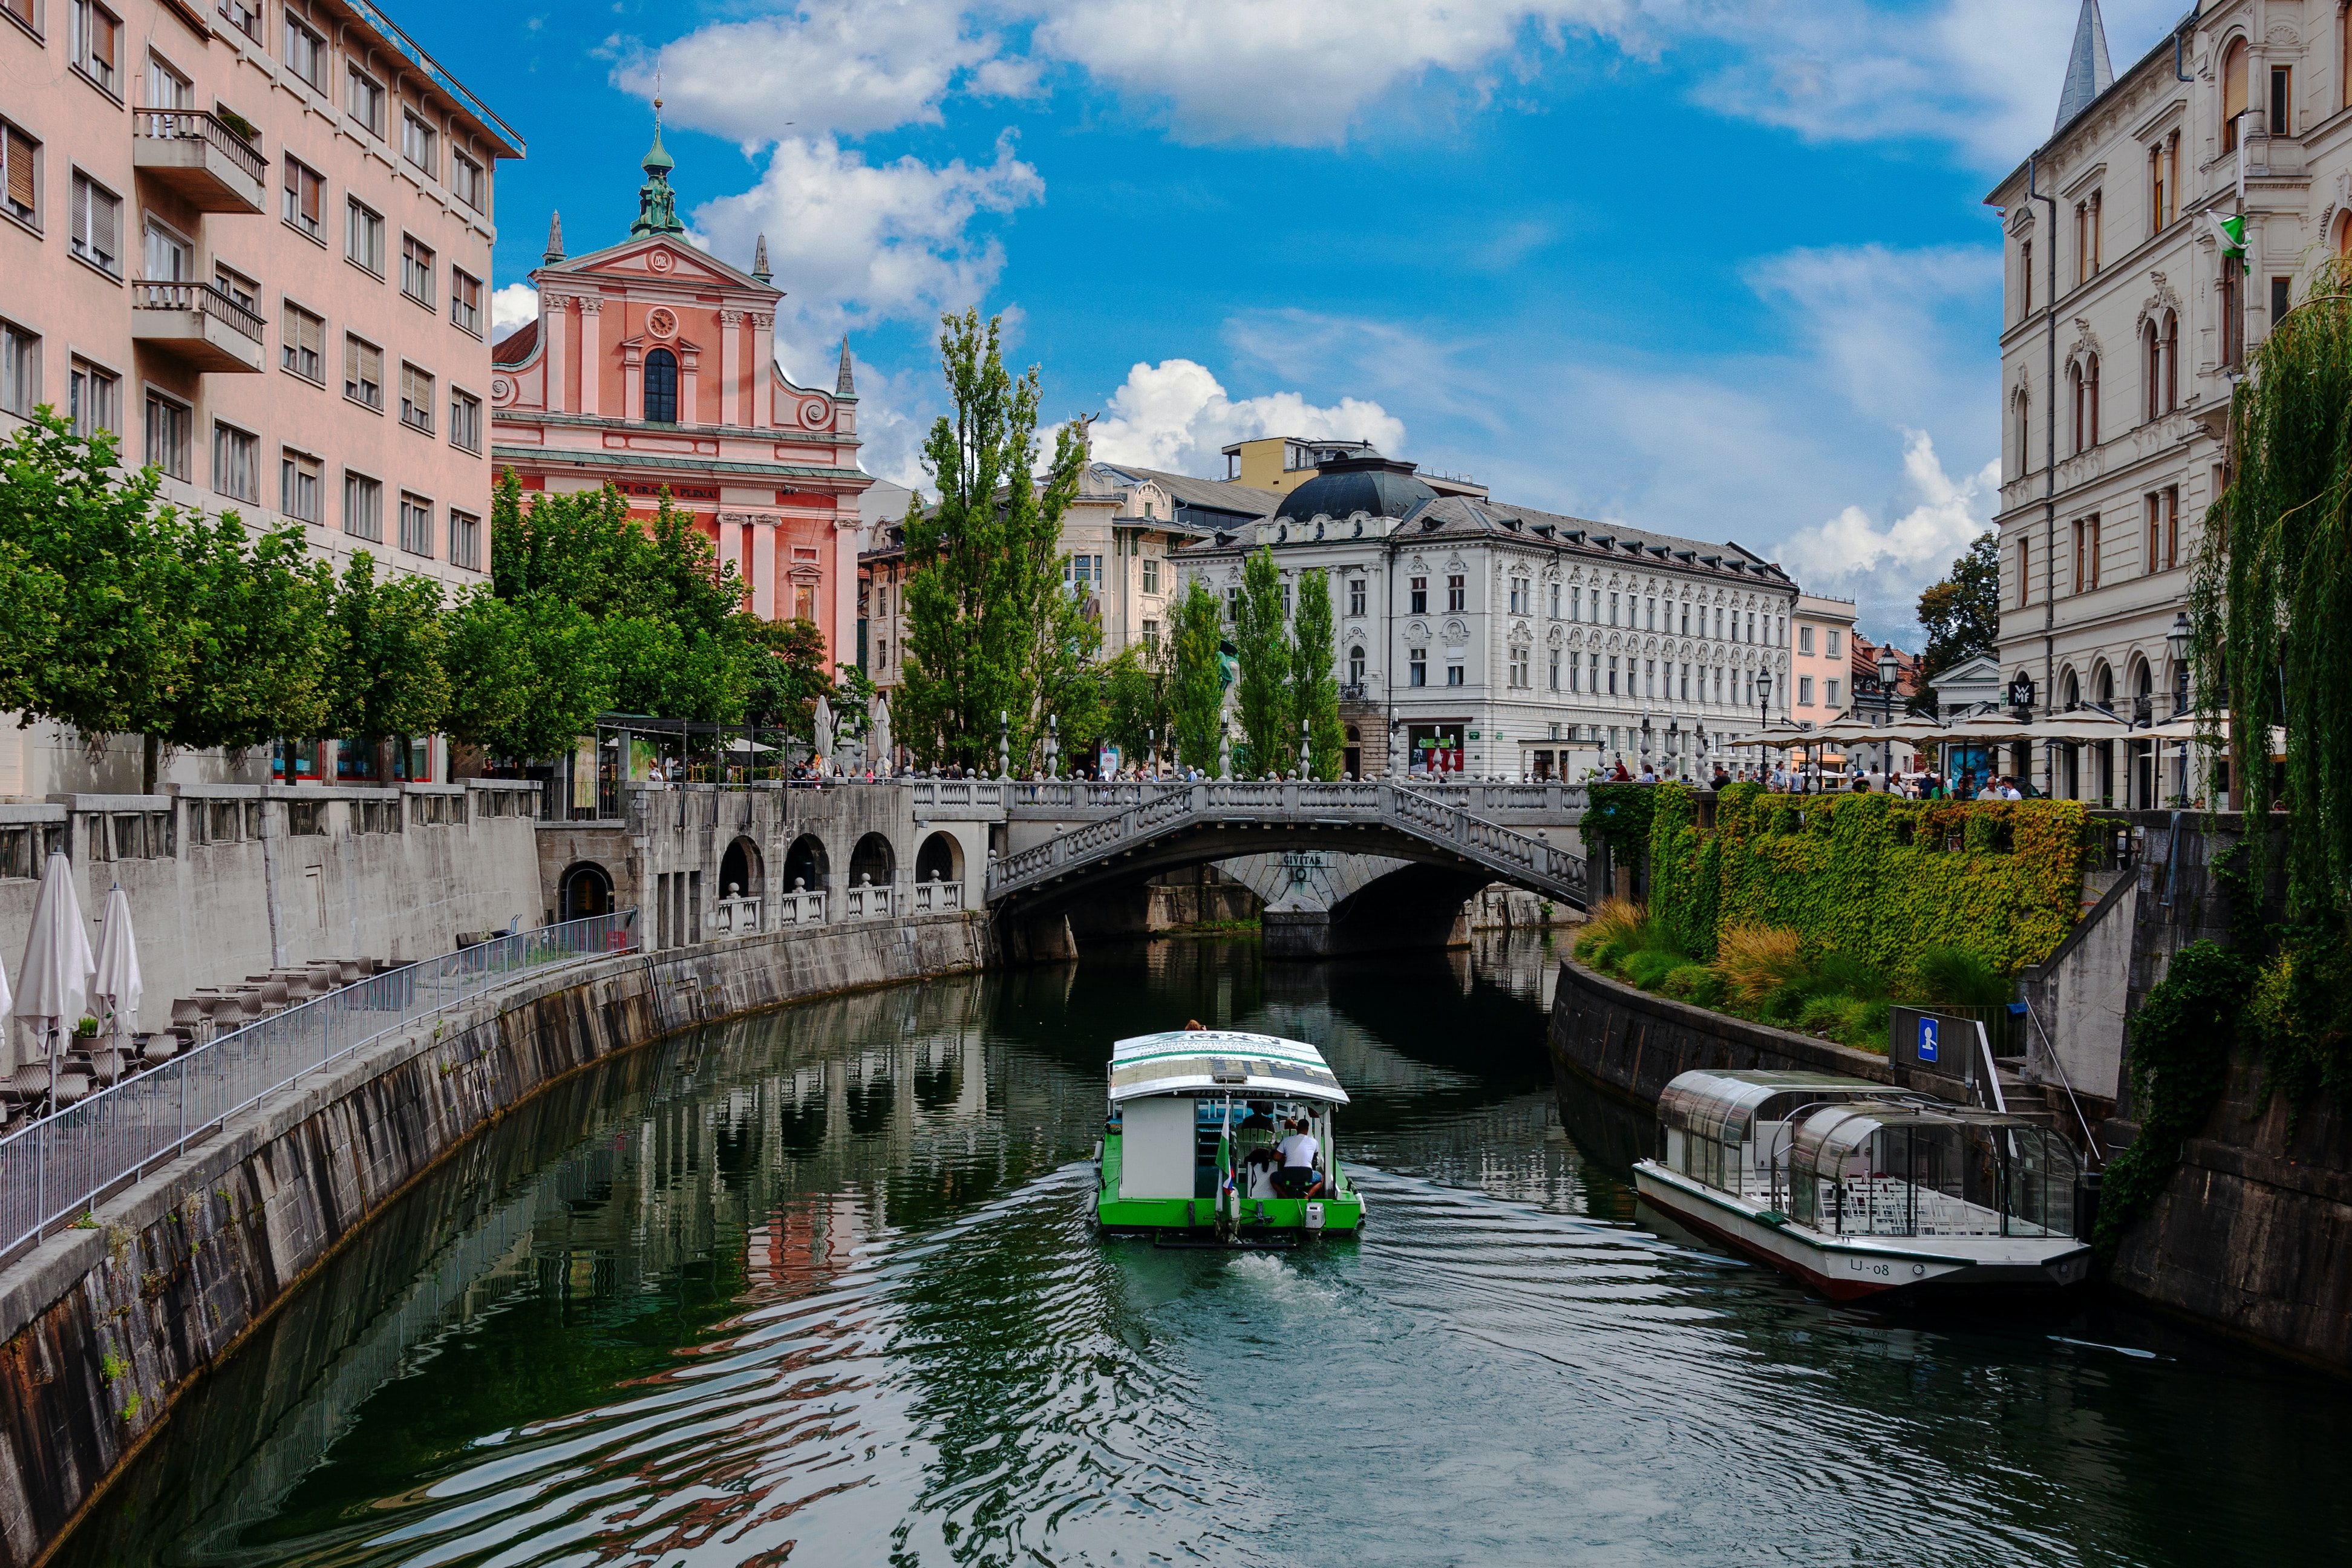 Båt på kanal i Ljubljana, Slovenia